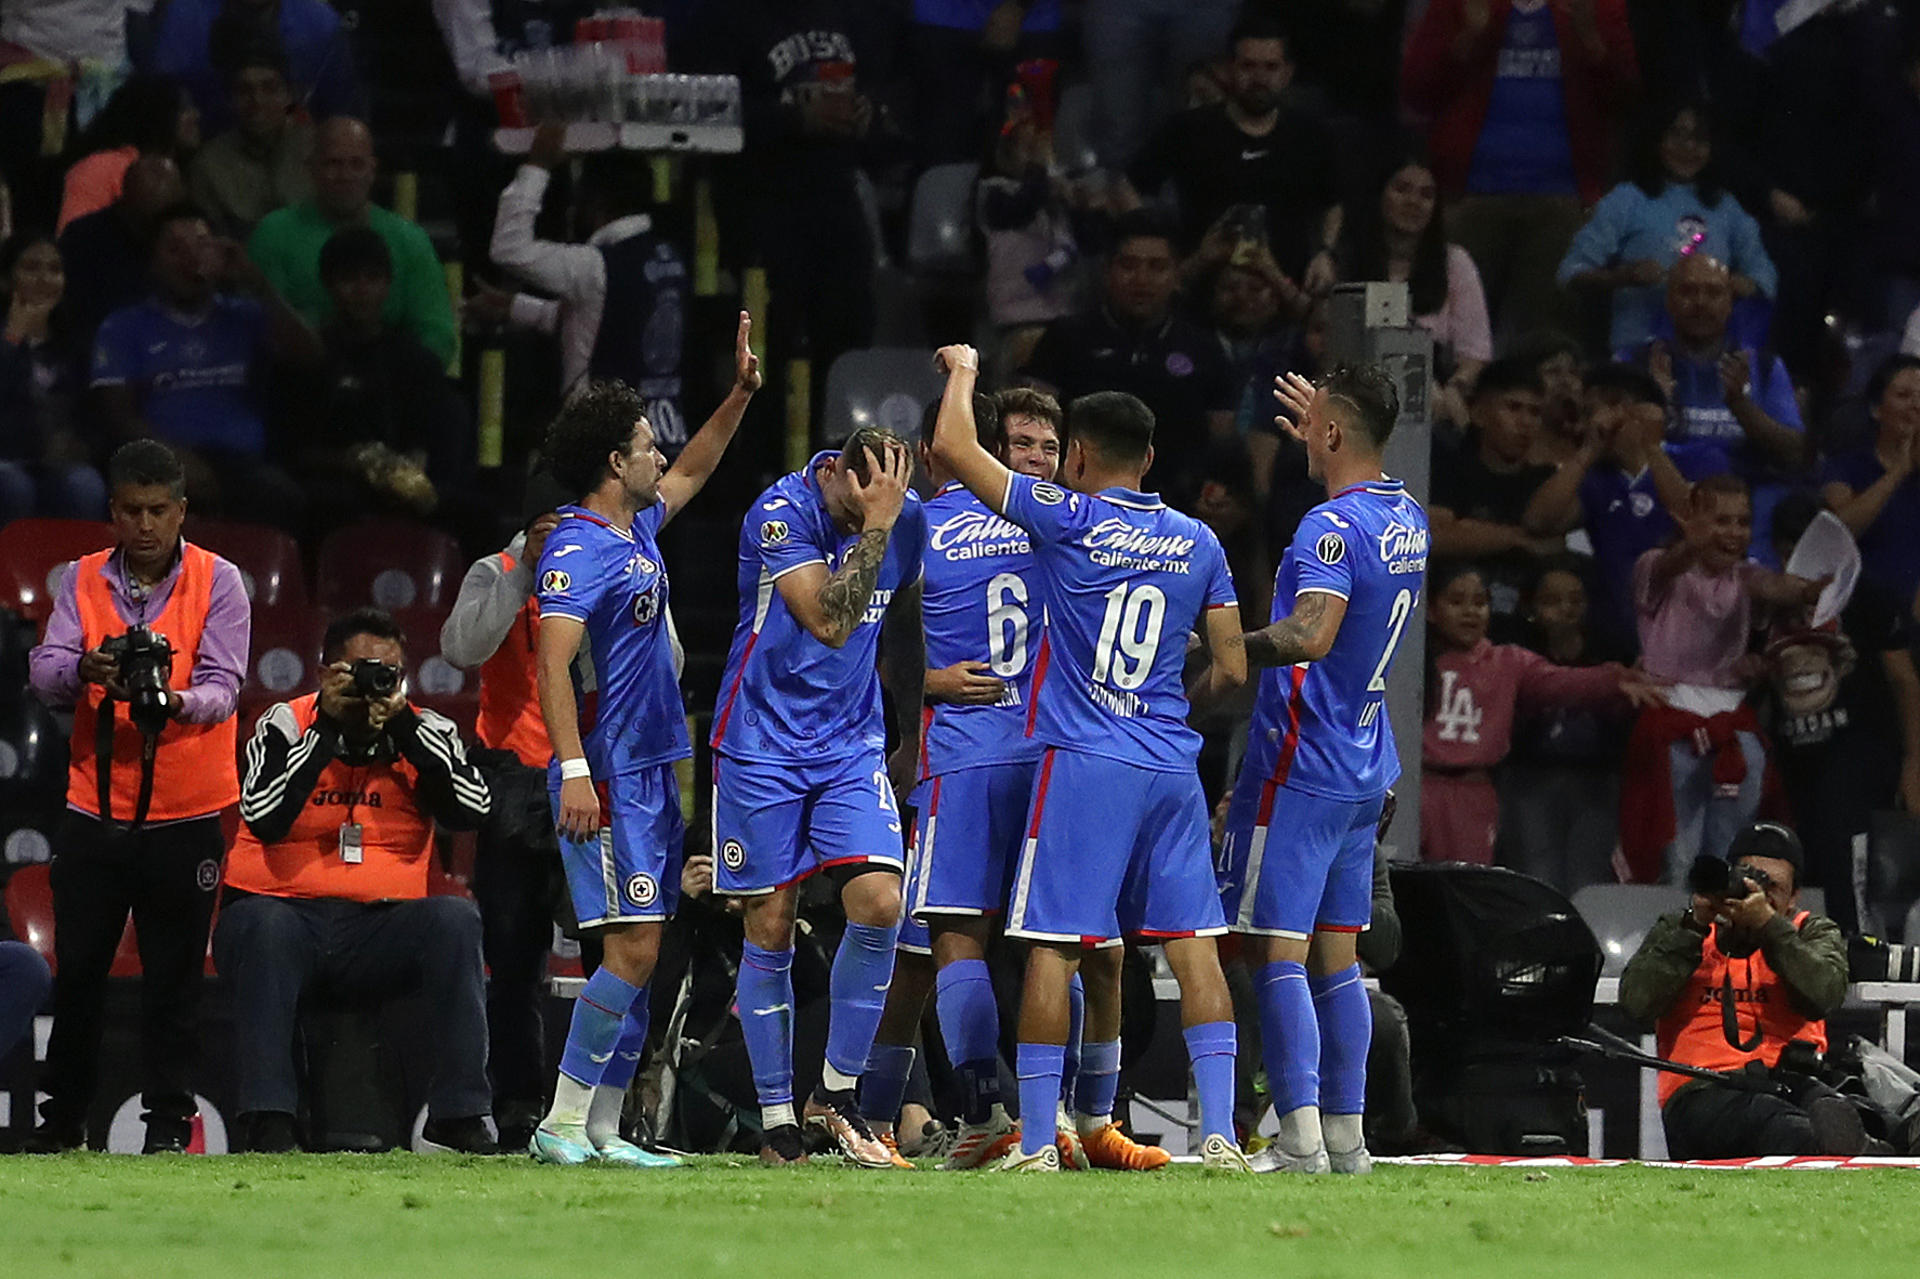 Jugadores del Cruz Azul celebran un gol en el estadio Azteca de Ciudad de México (México). EFE/Sánhenka Gutiérrez